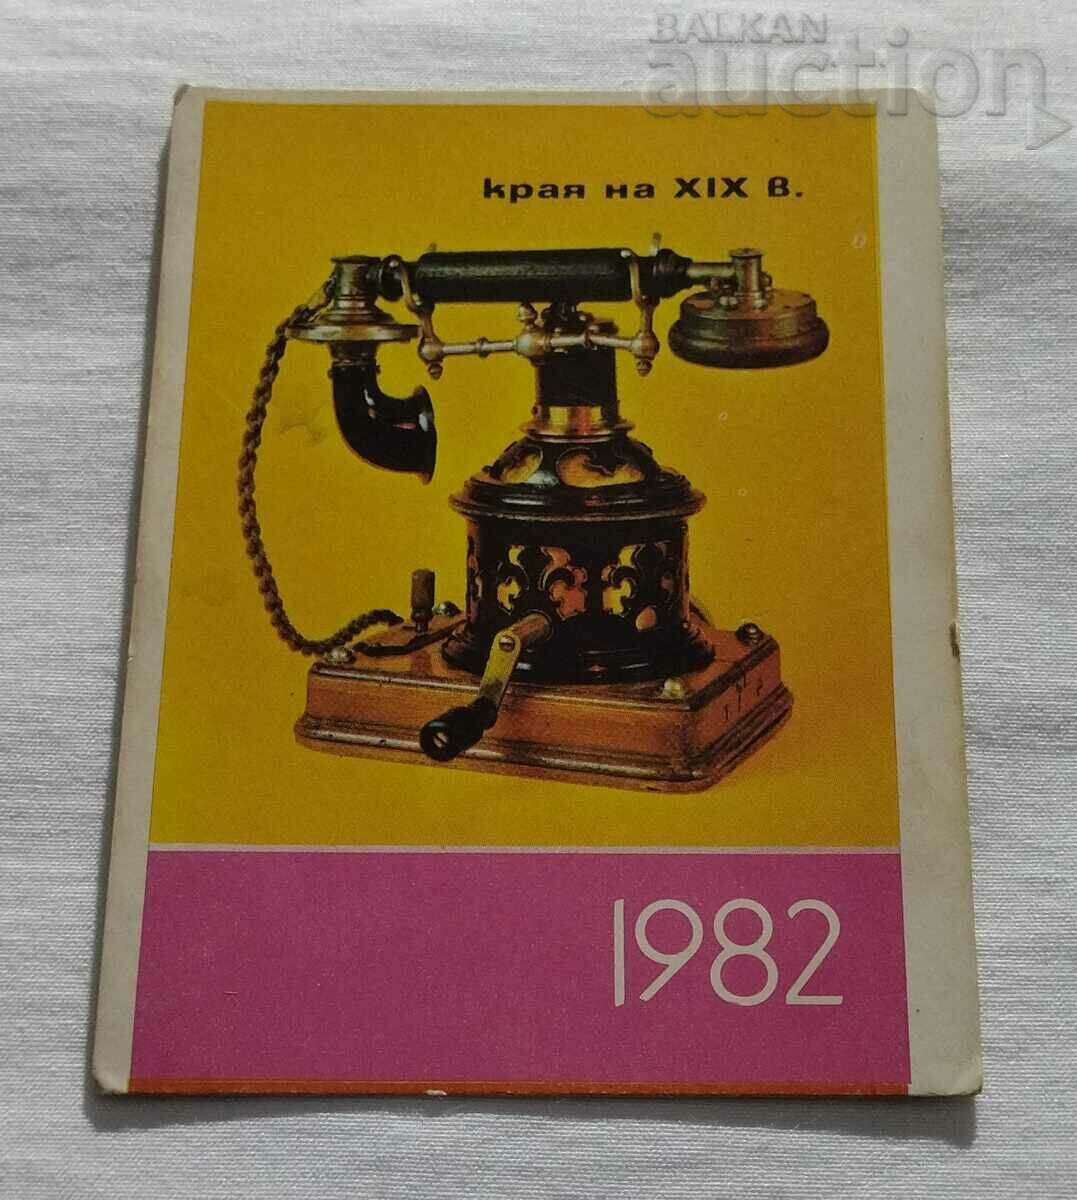 MODEL DE TELEFON SFÂRTUL SECOLULUI XIX. CALENDAR 1982